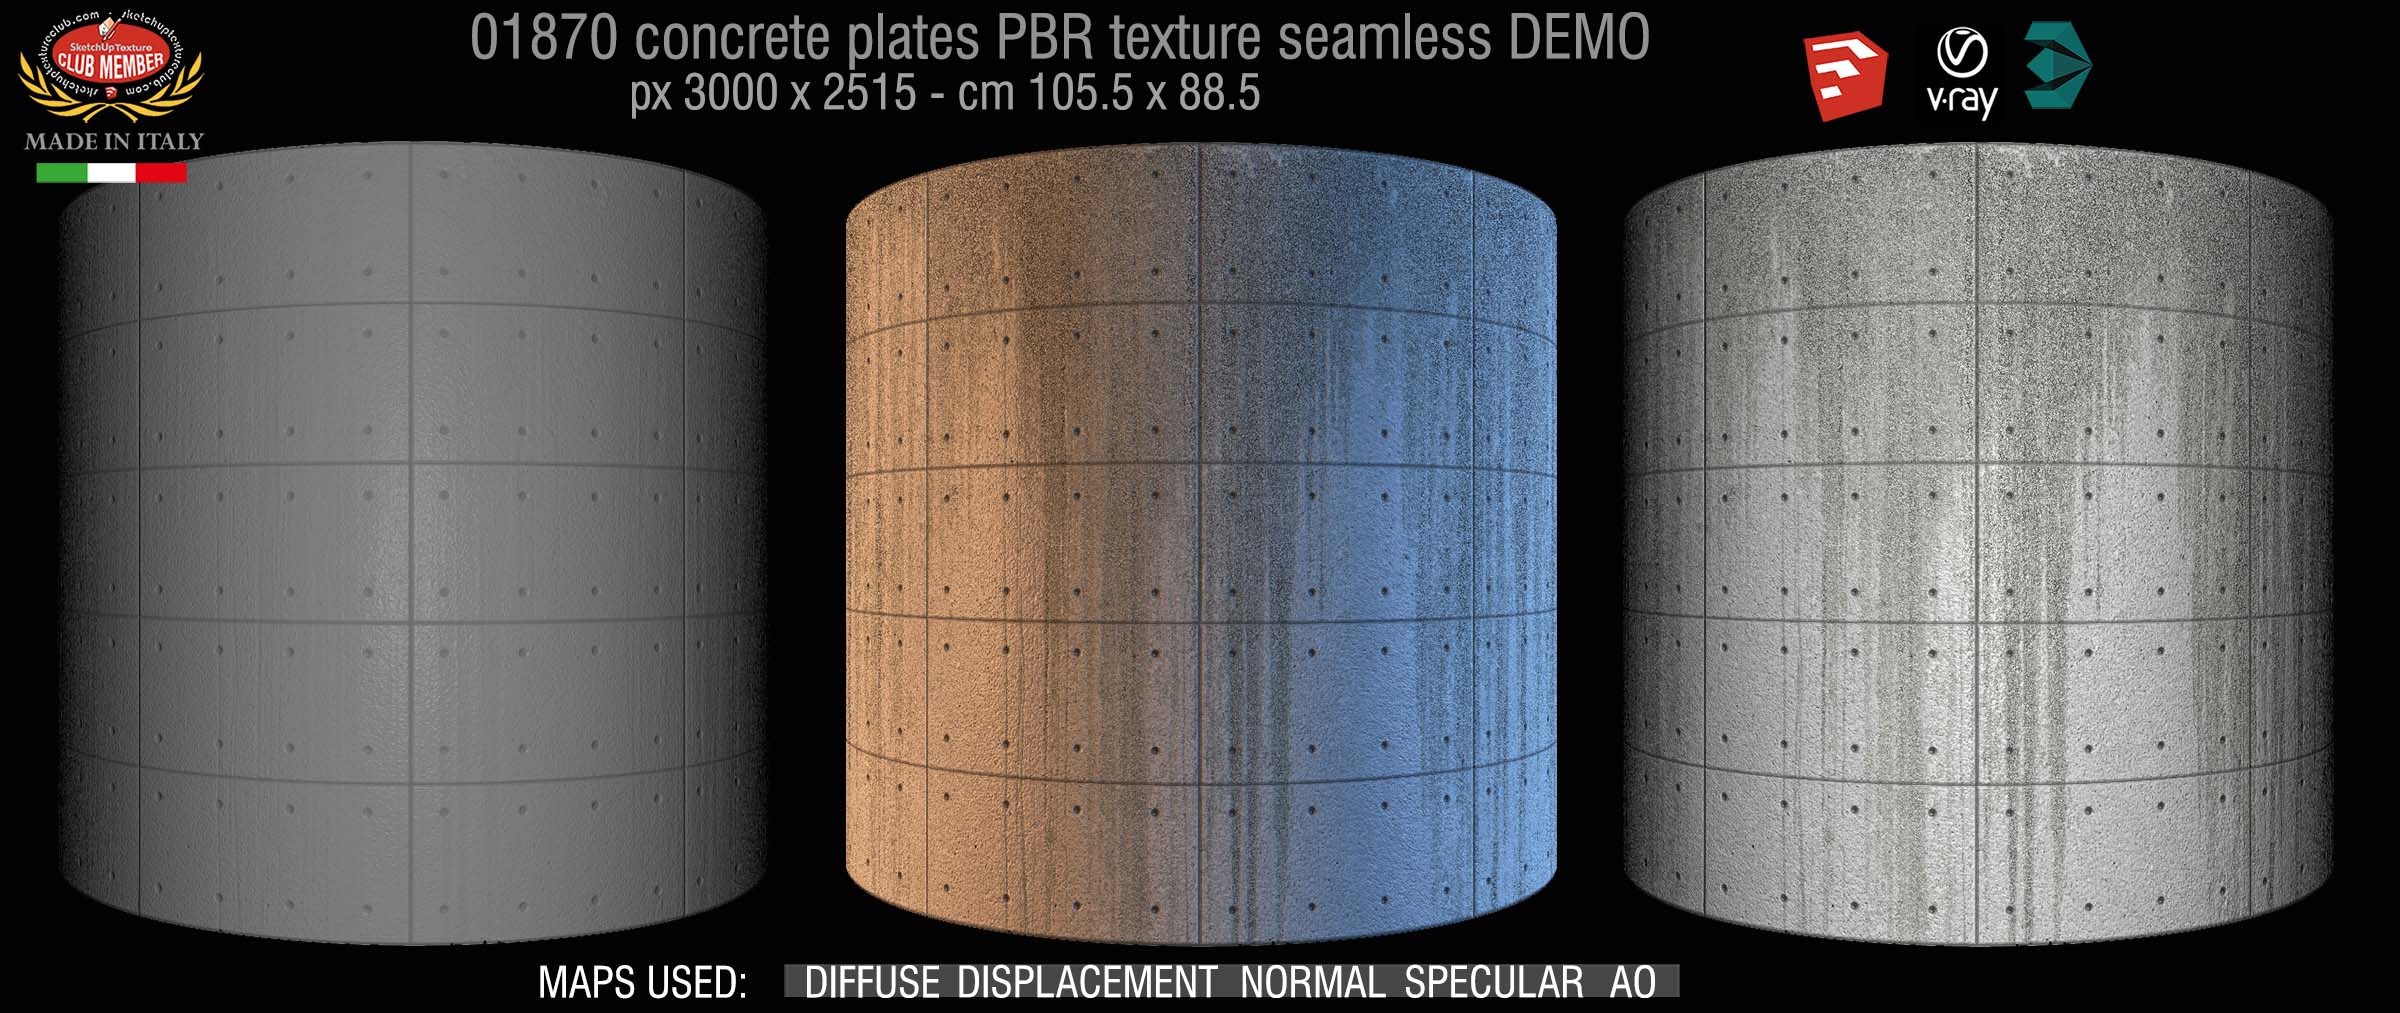 01870 Tadao Ando concrete plates PBR texture seamless DEMO